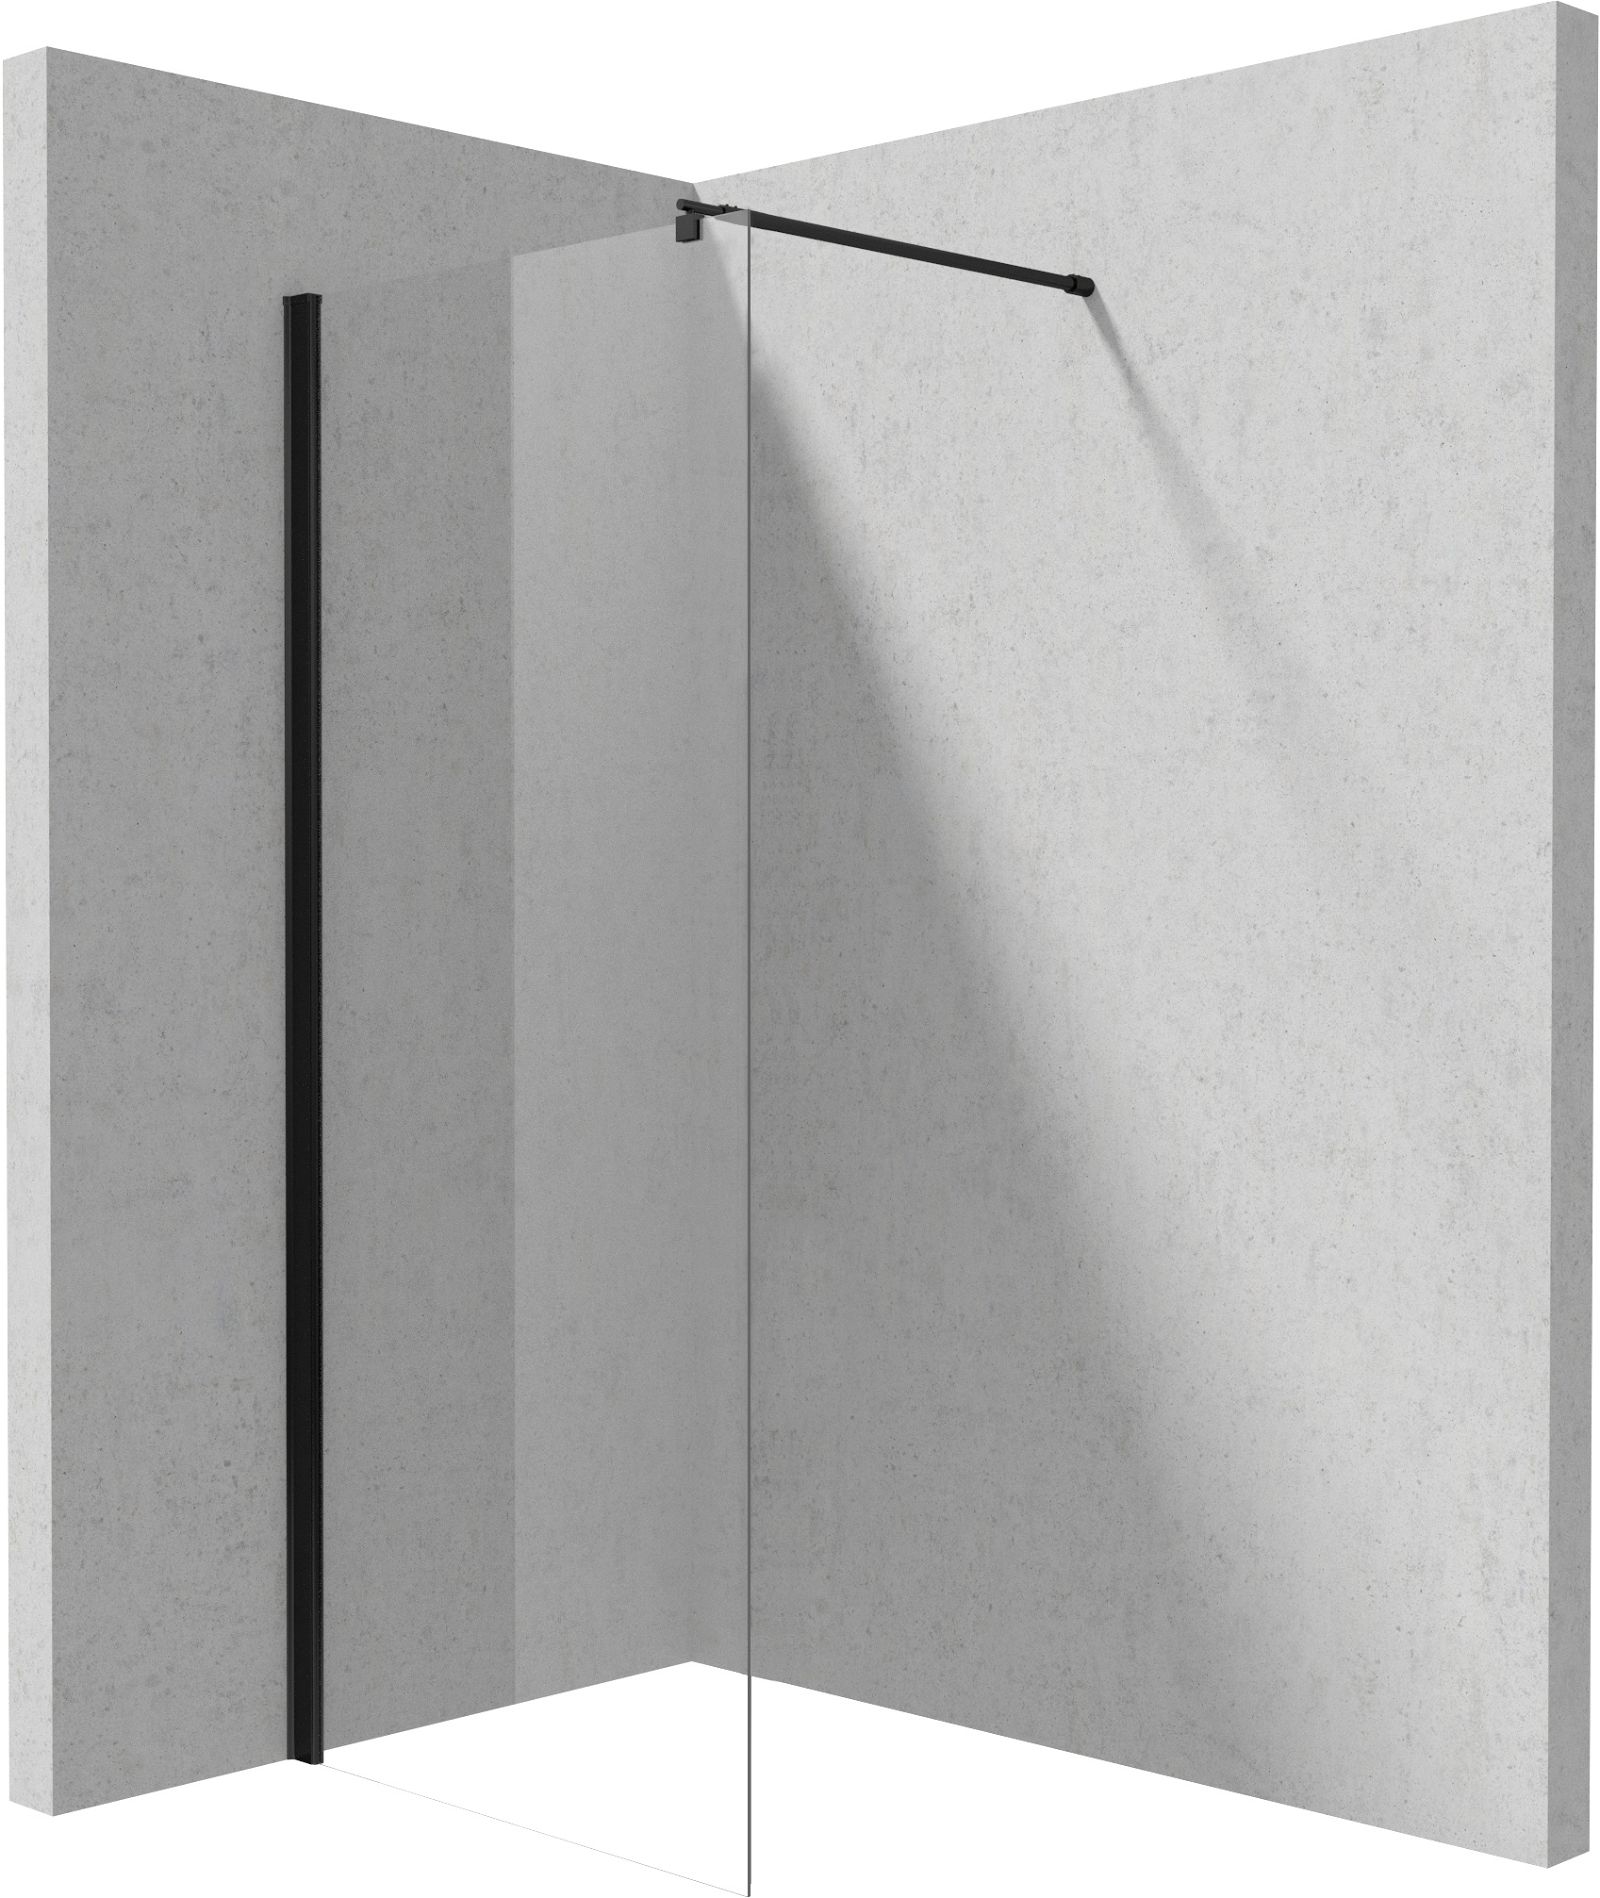 Shower wall / walk-in, Kerria Plus system, 90 cm - KTS_N39P - Główne zdjęcie produktowe